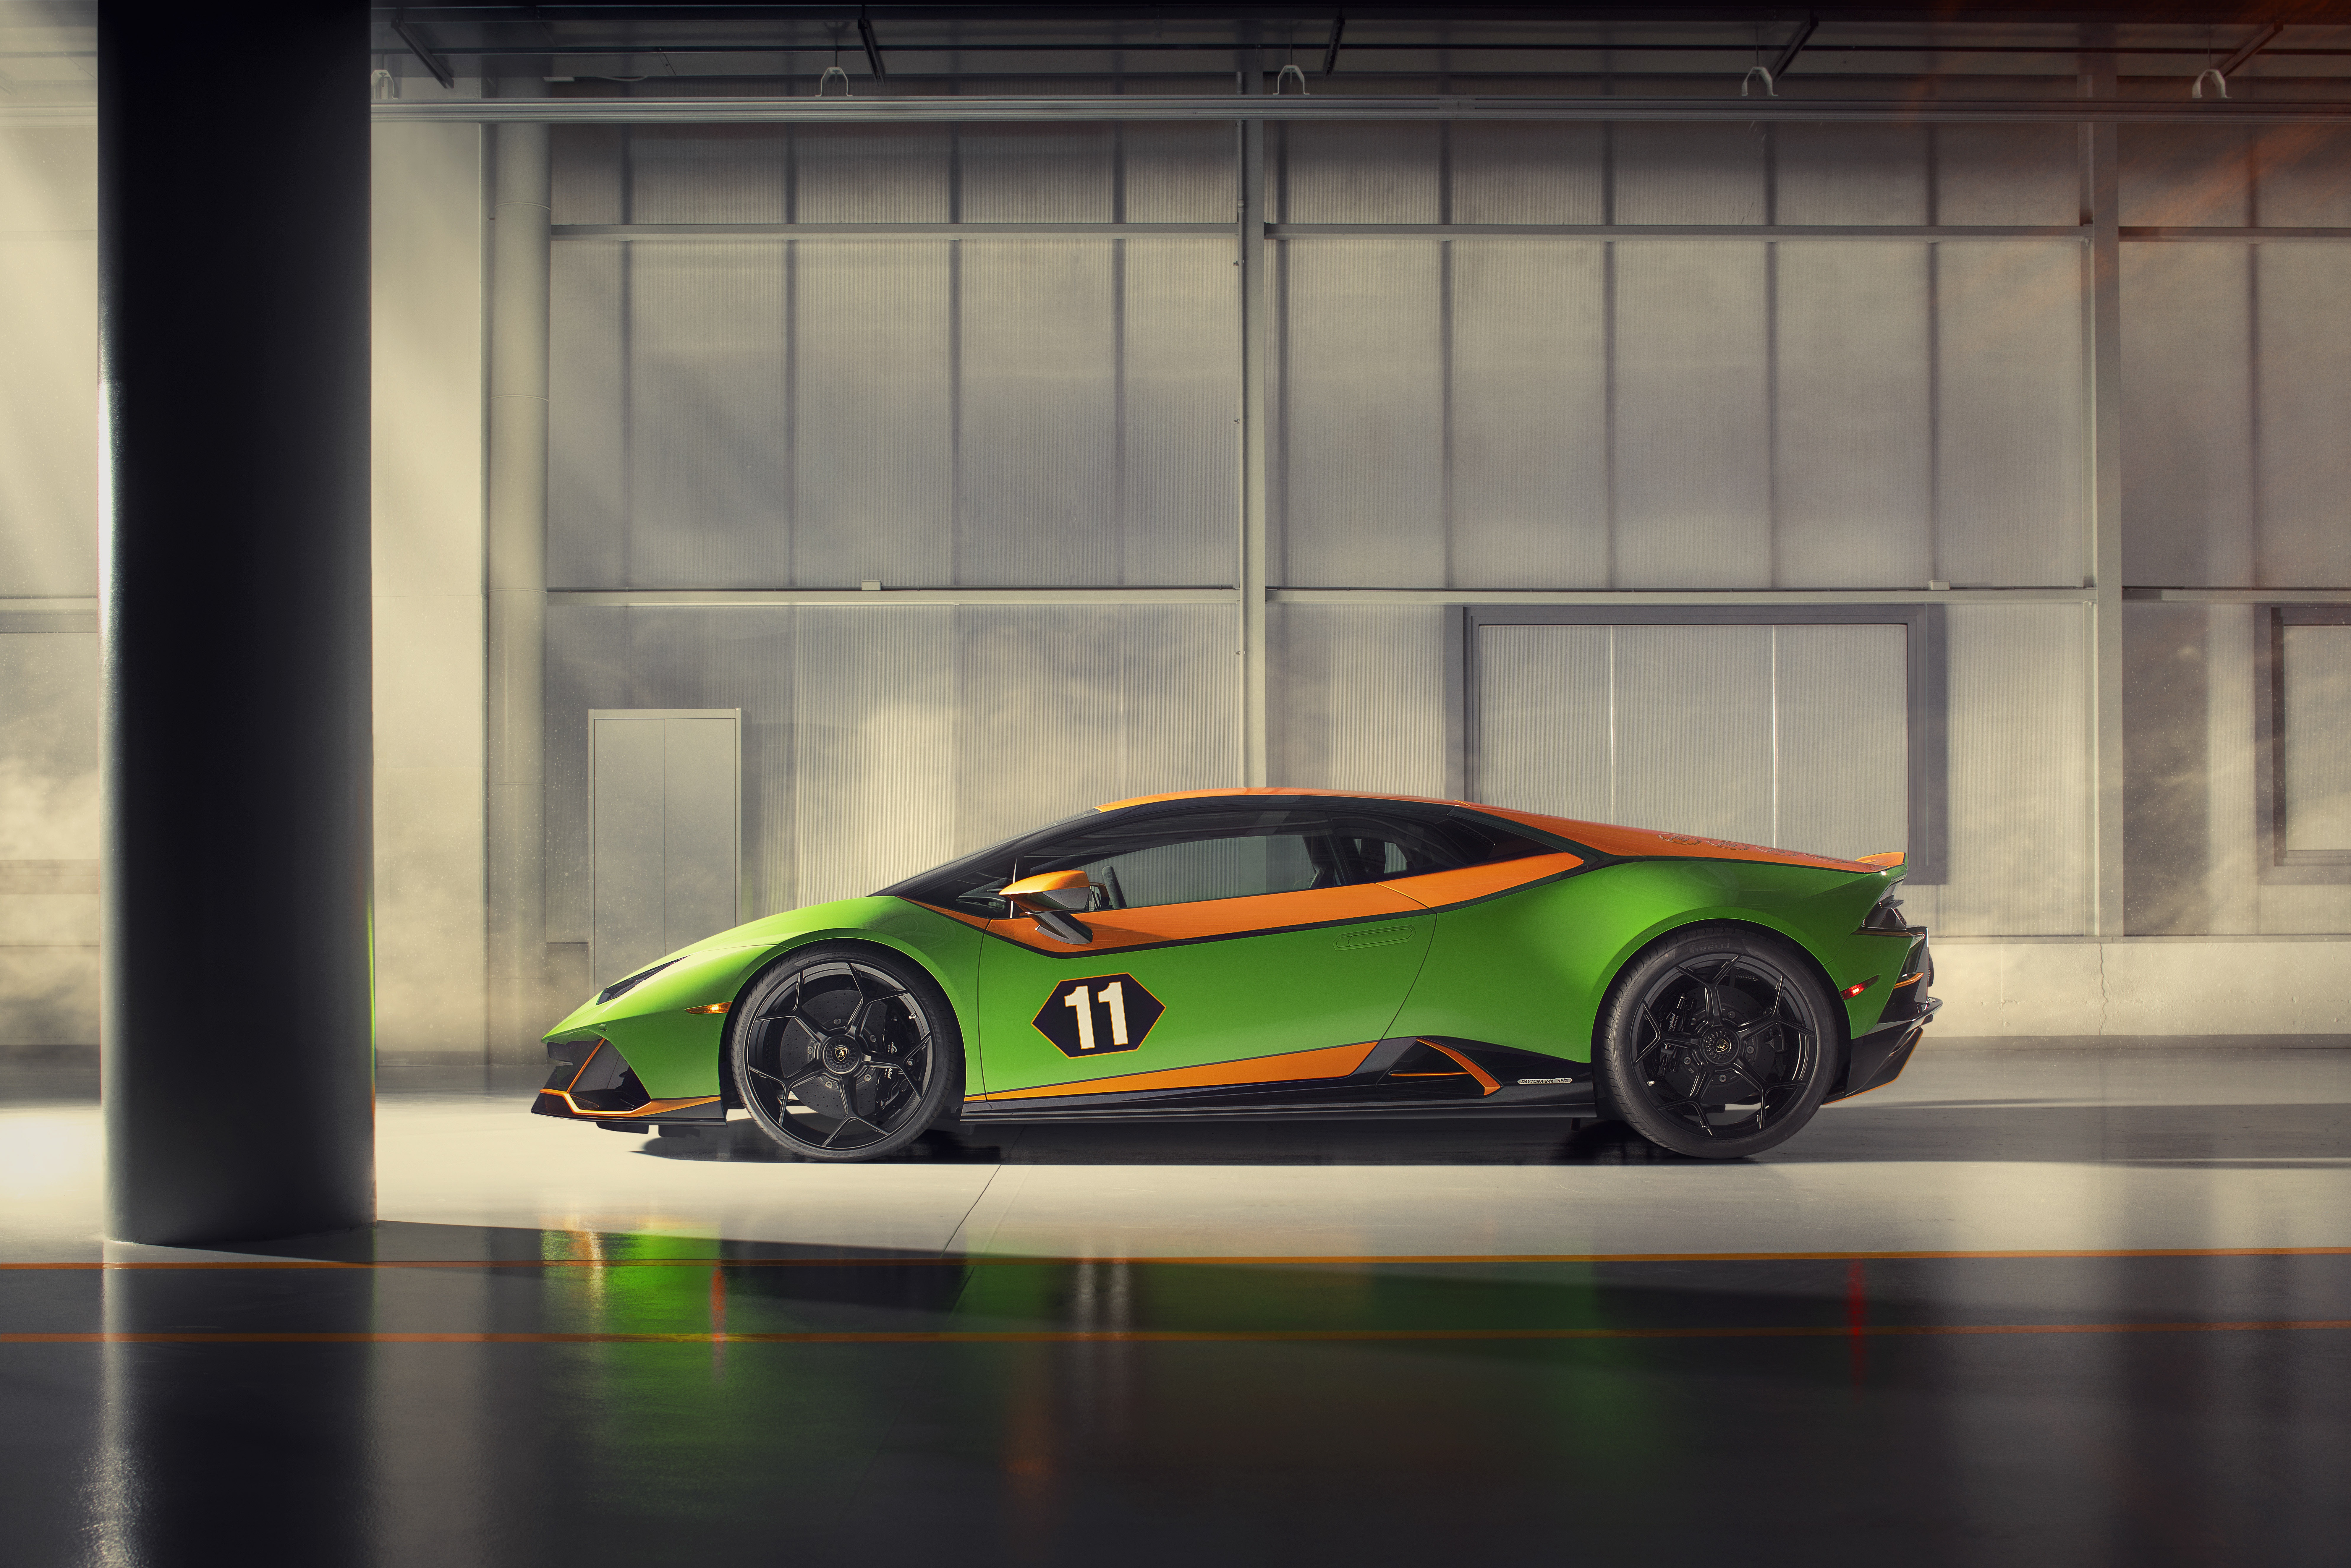 Meilleurs fonds d'écran Célébration De La Lamborghini Huracán Evo Gt pour l'écran du téléphone